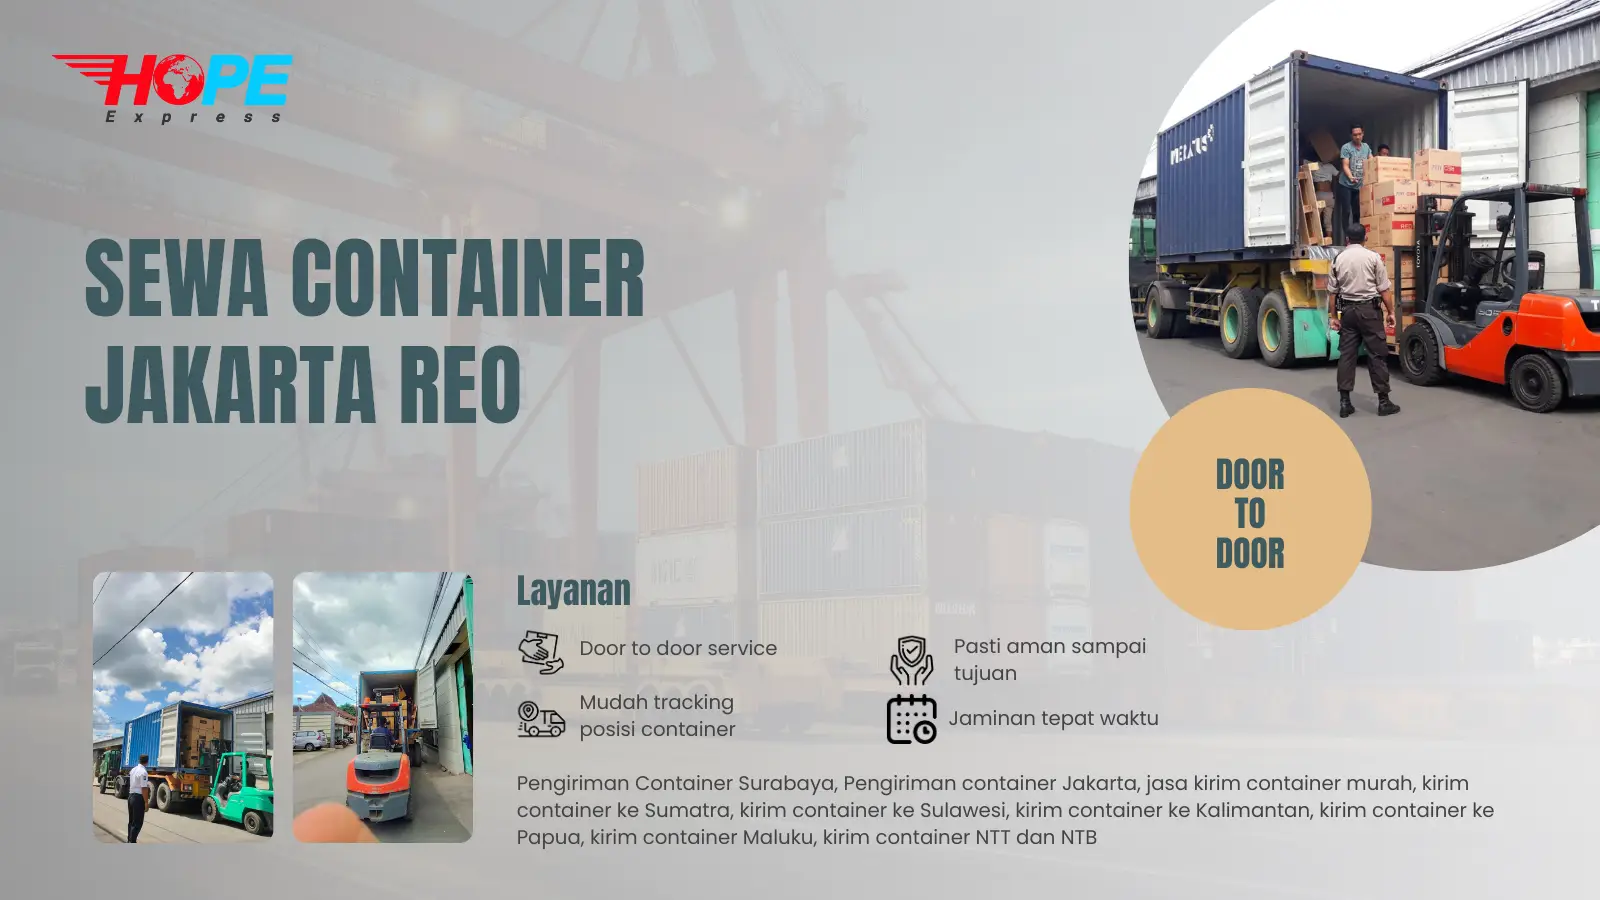 Sewa Container Jakarta Reo